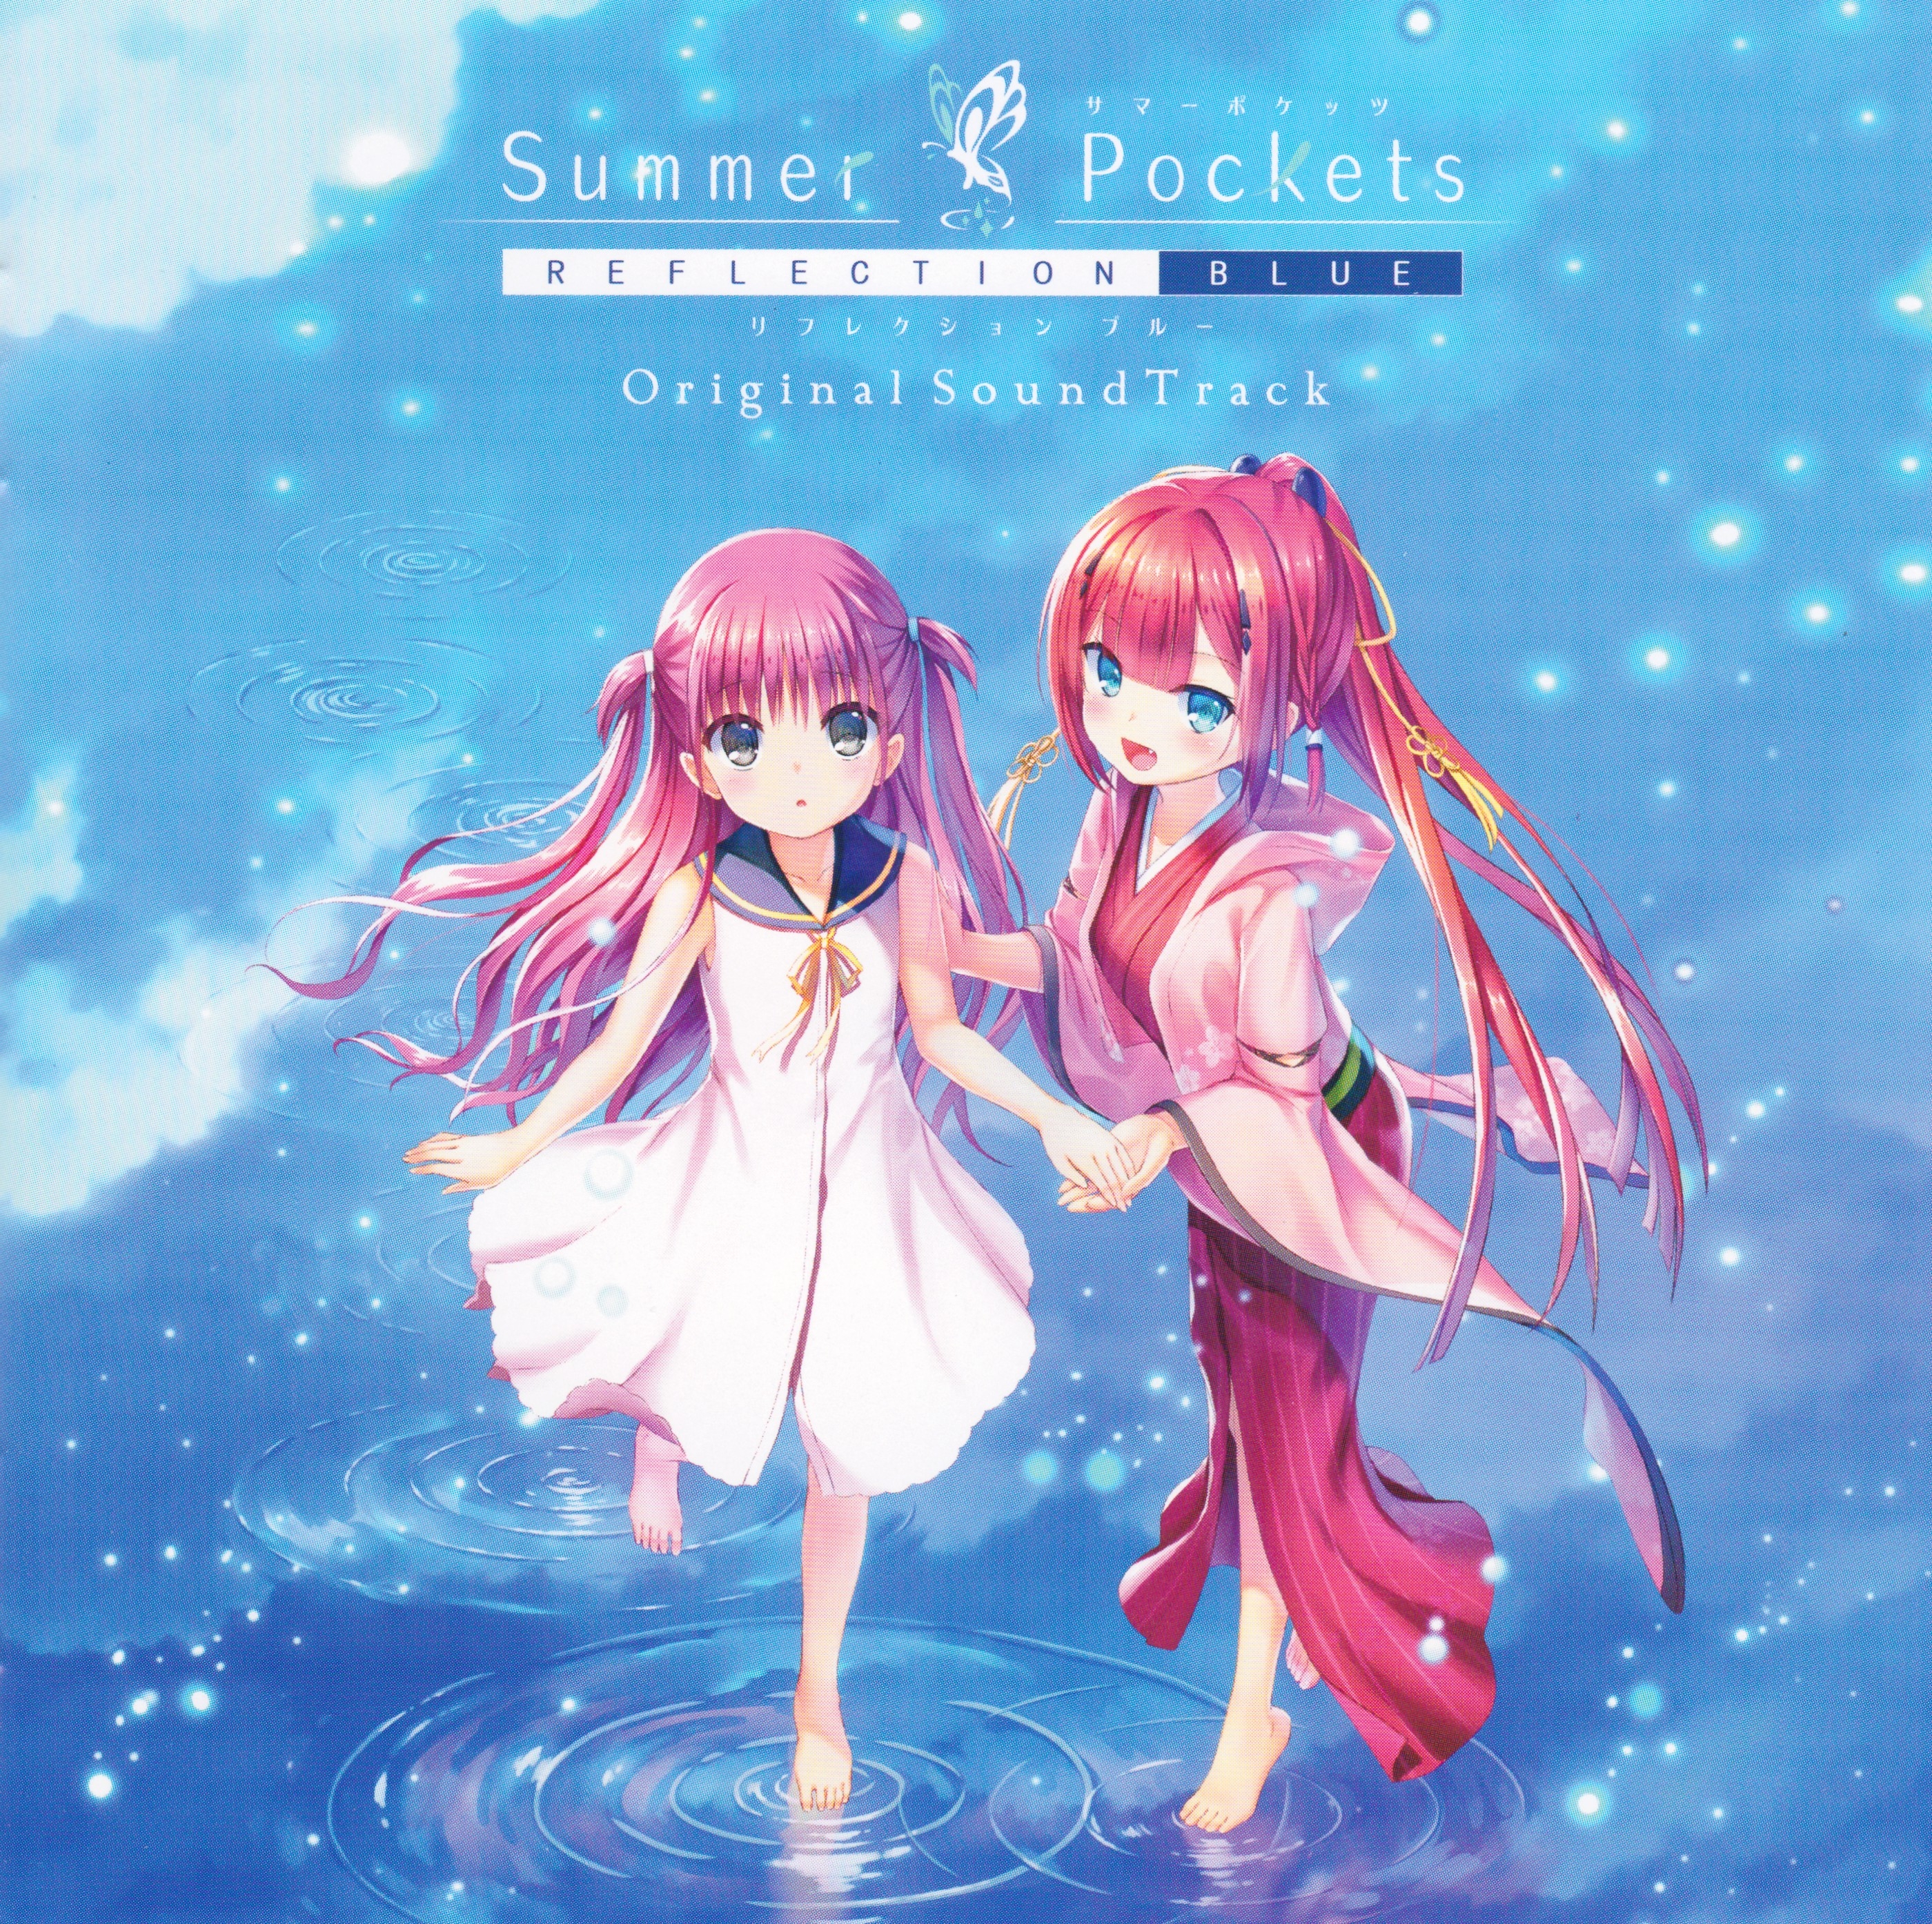 Summer Pockets REFLECTION BLUE Original SoundTrack (2020 